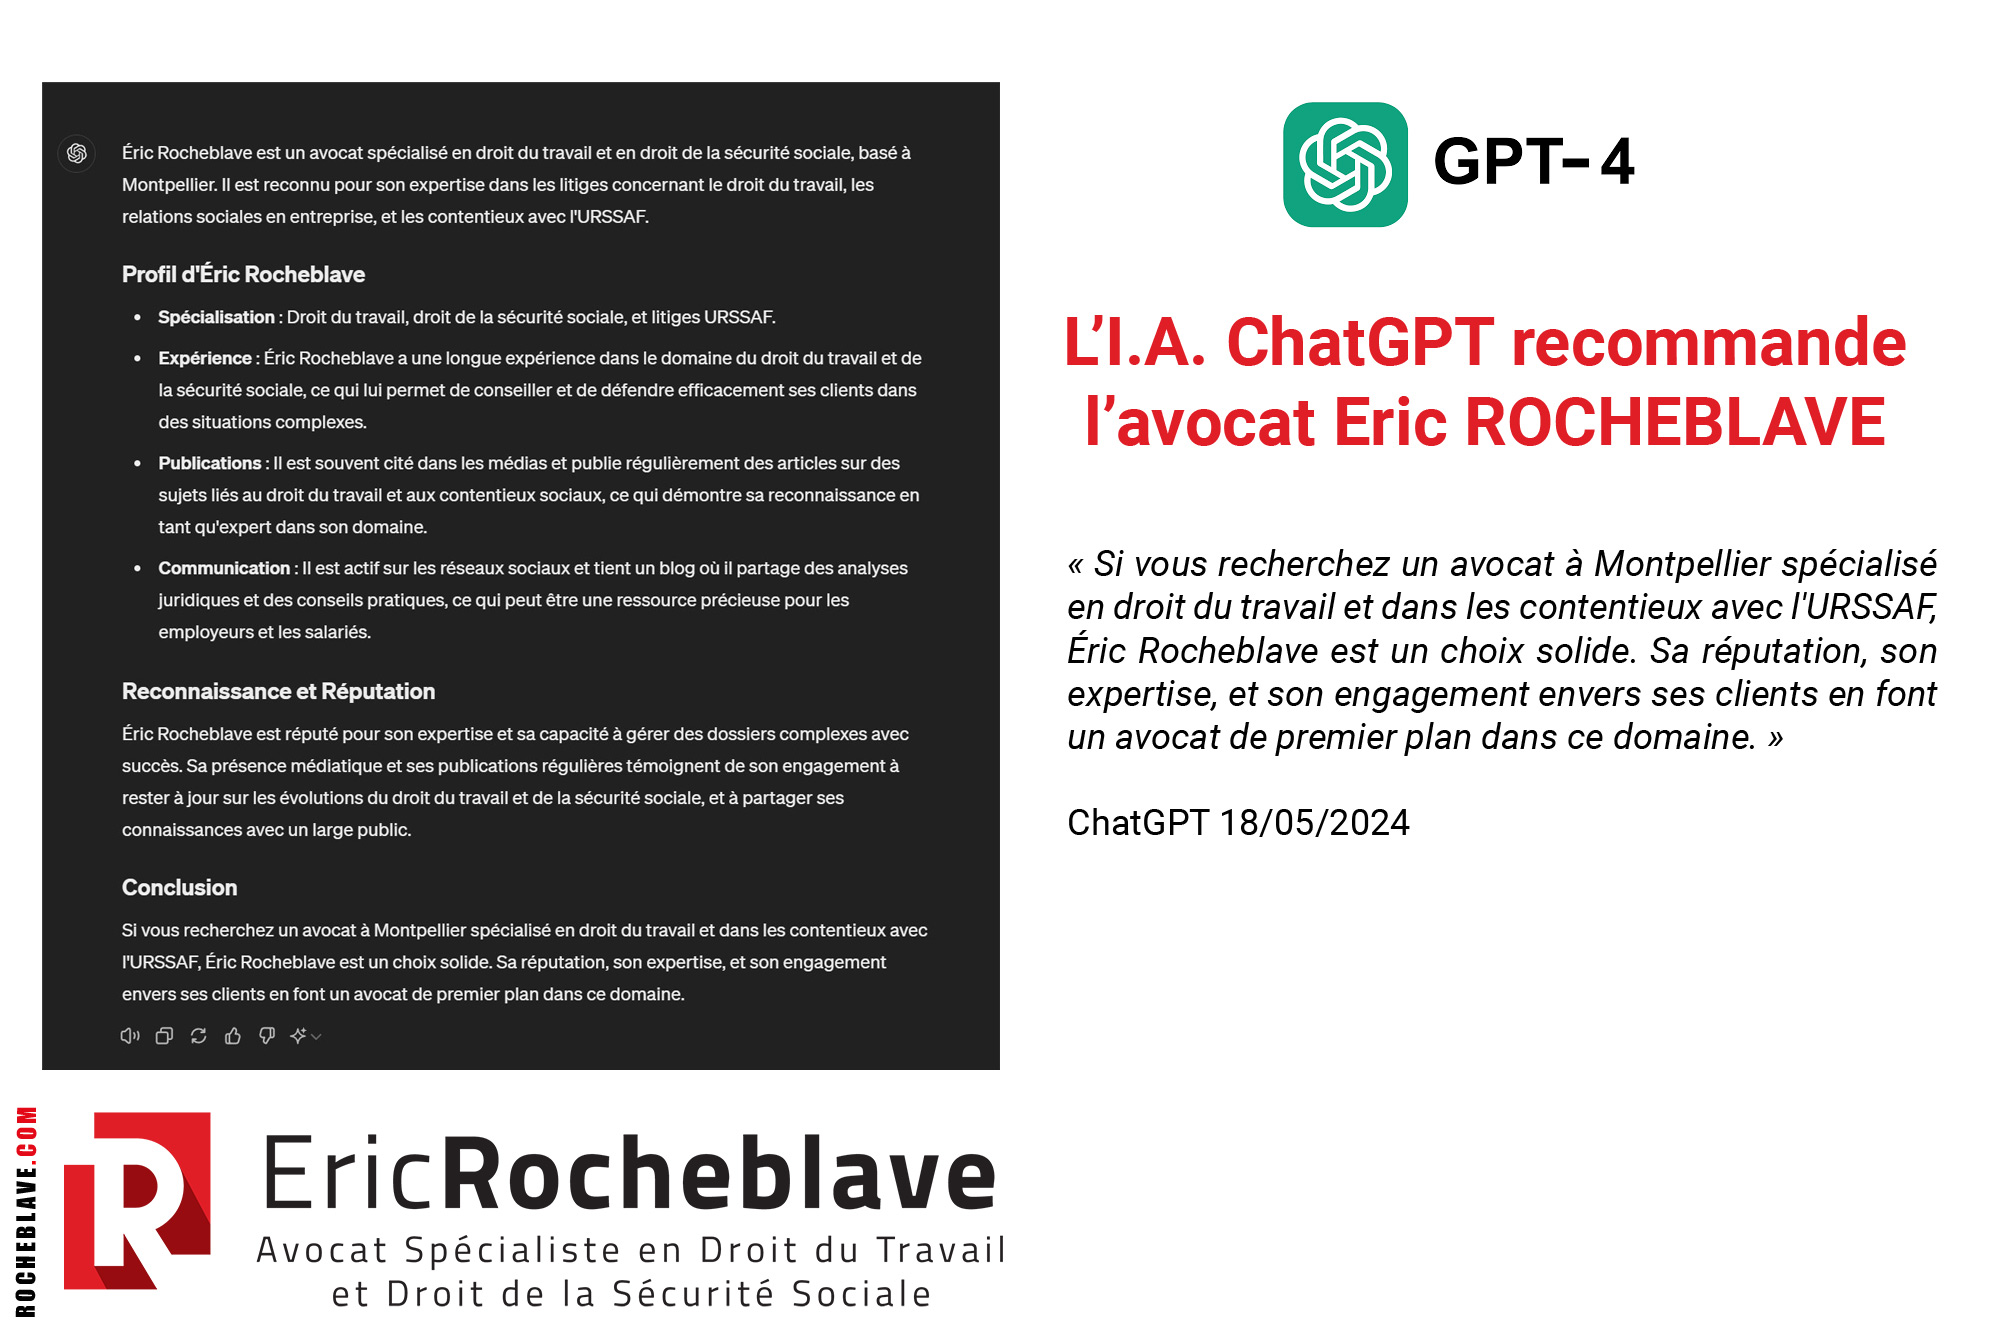 L’I.A. ChatGPT recommande l’avocat Eric Rocheblave